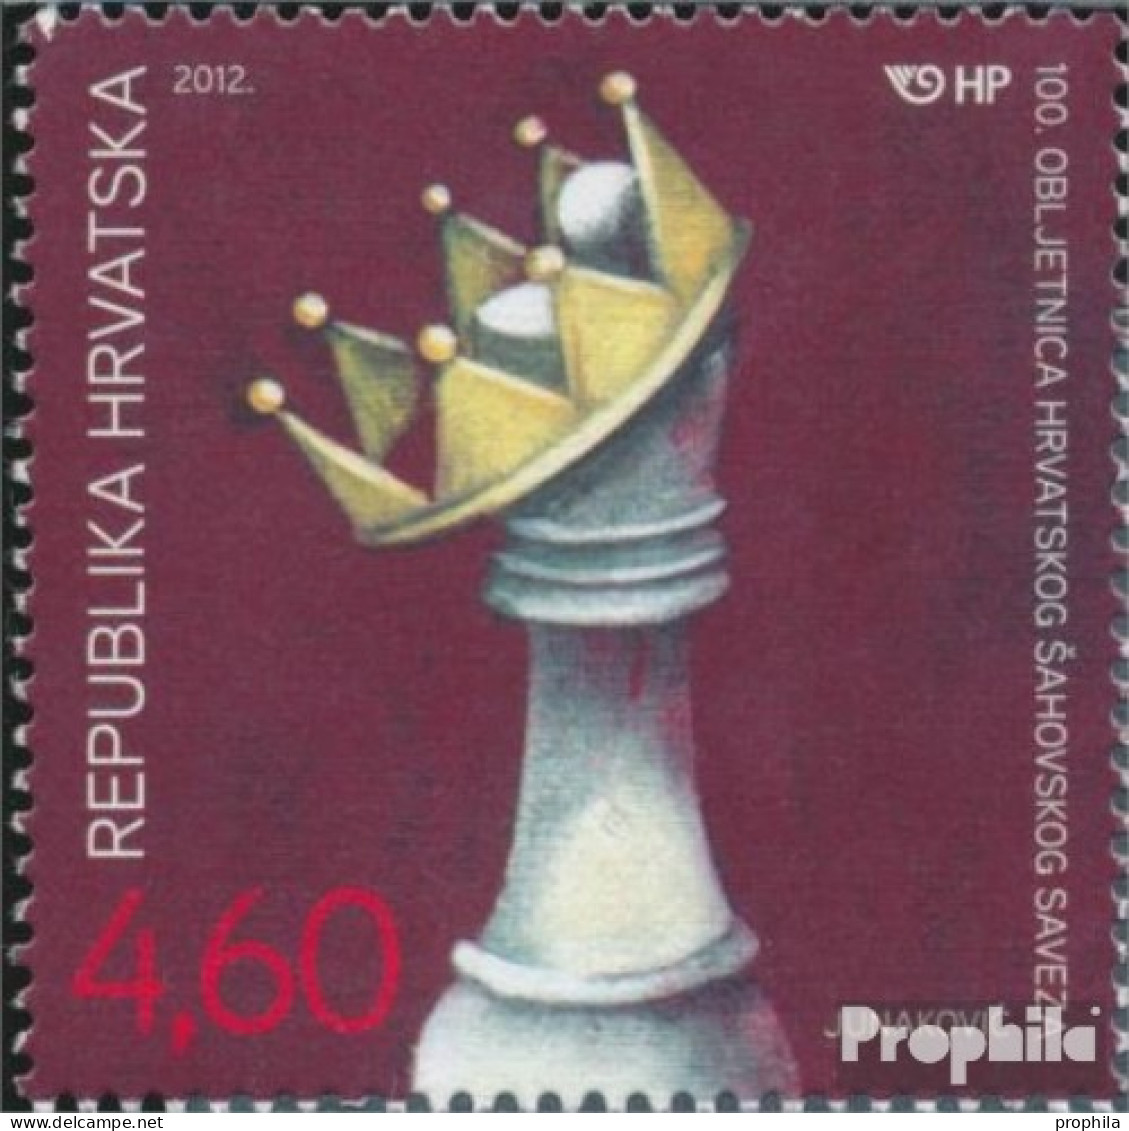 Kroatien 1035 (kompl.Ausg.) Postfrisch 2012 Schachverband - Kroatien